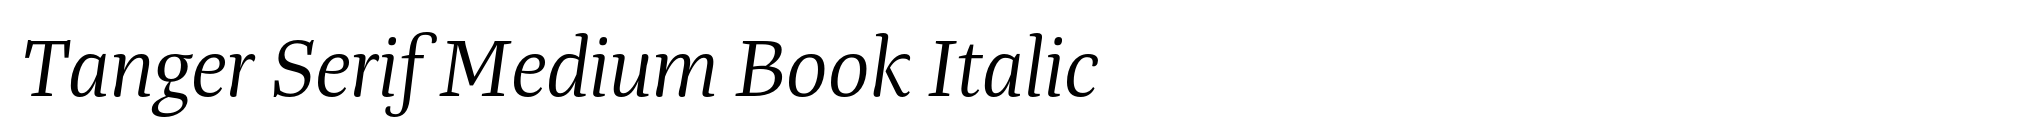 Tanger Serif Medium Book Italic image